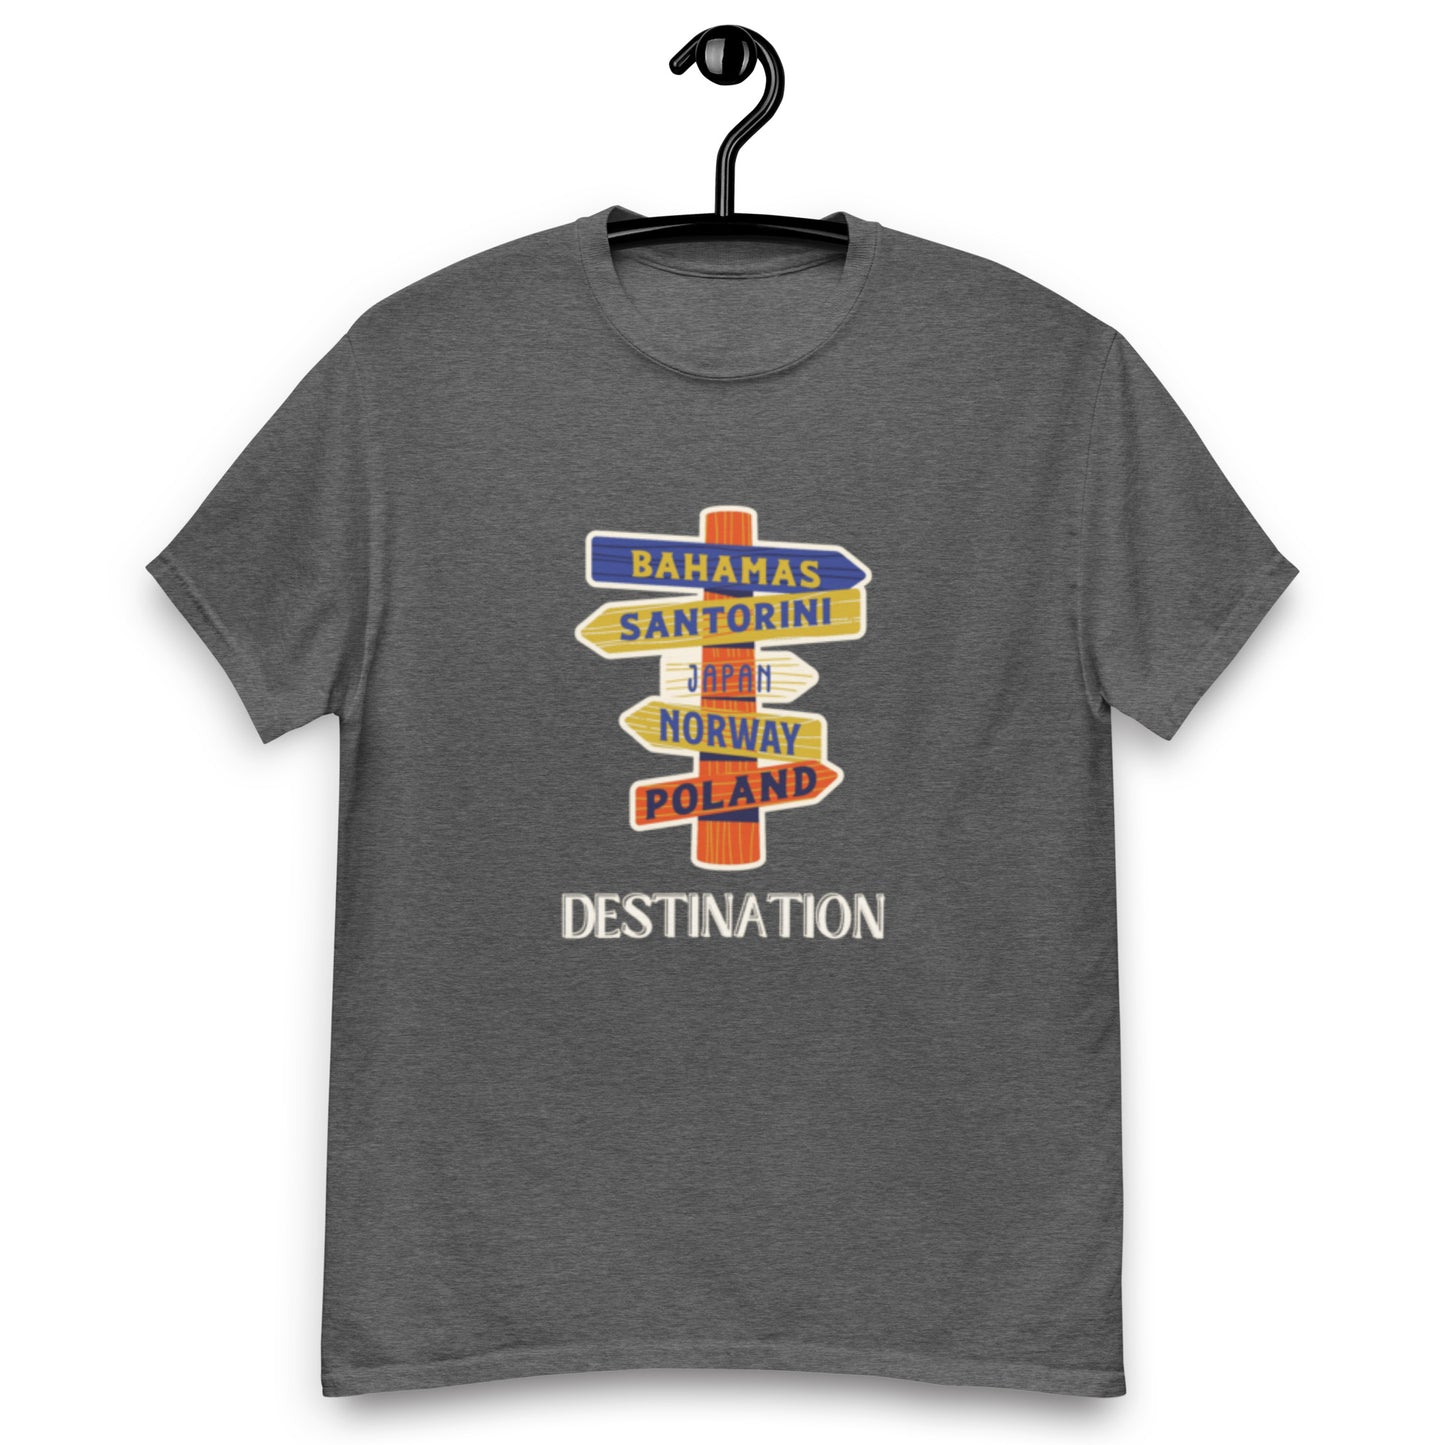 "destination" t shirt